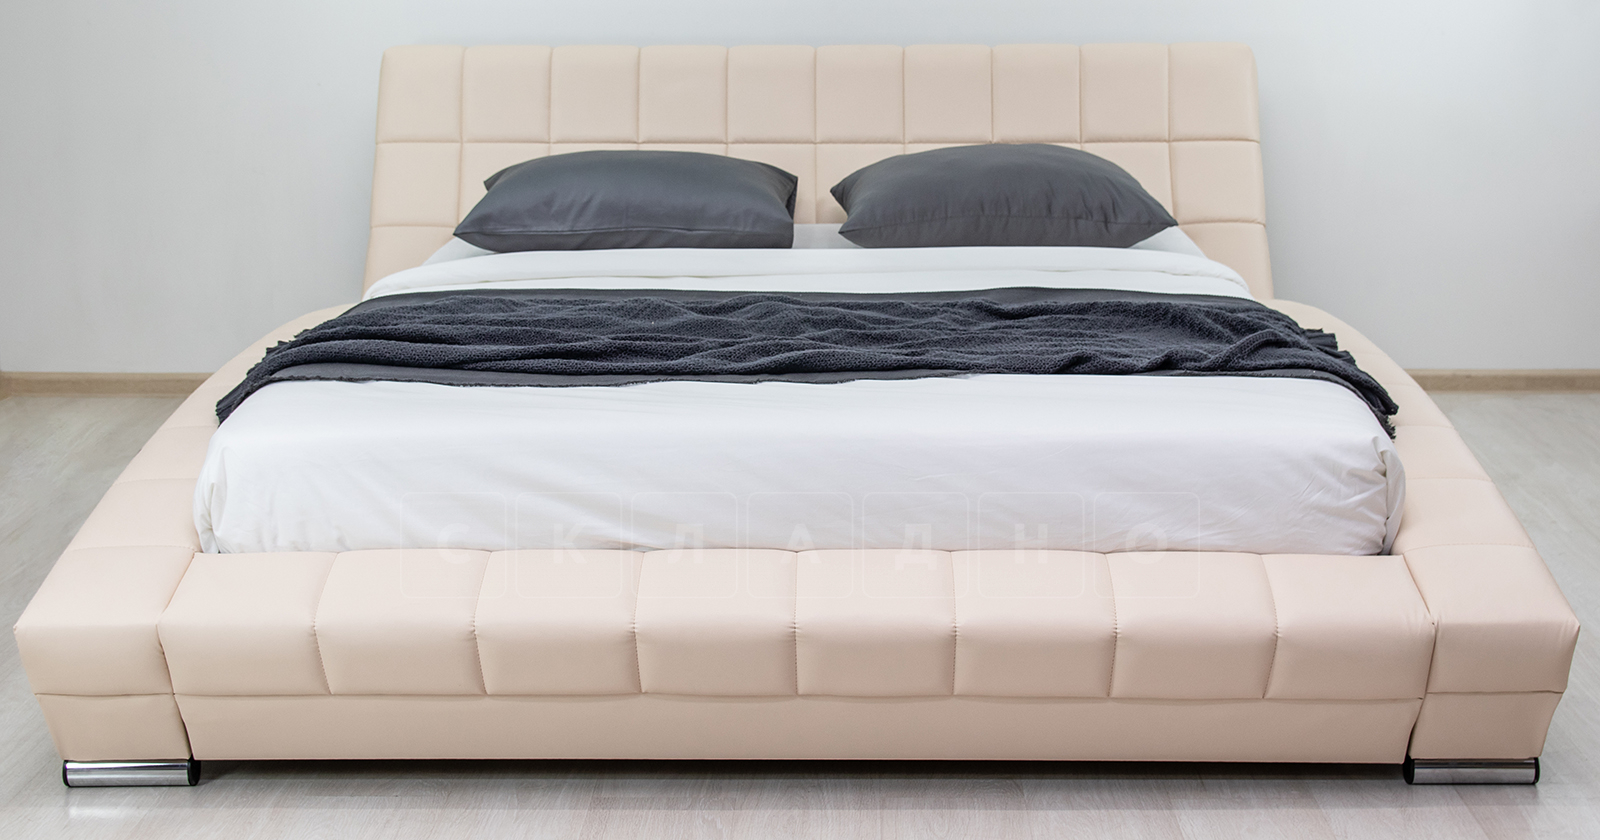 Мягкая кровать Оливия 160 см экокожа бежевый фото 13 | интернет-магазин Складно